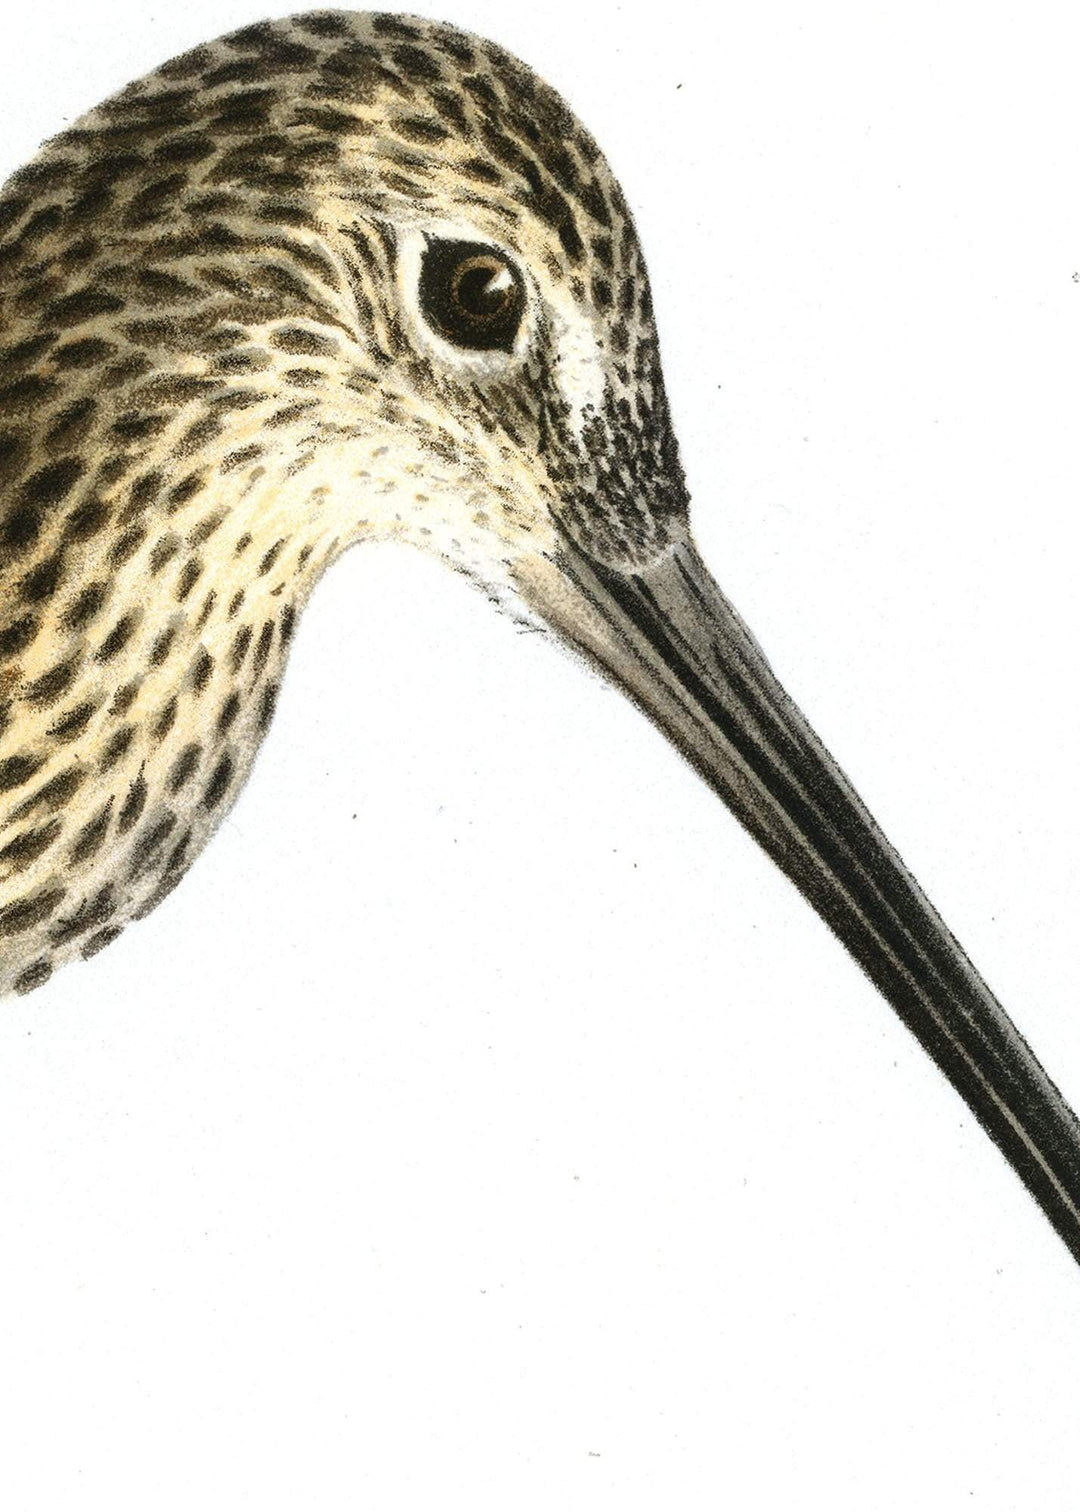 Fågeln Storspov på klassisk vintage poster/affisch